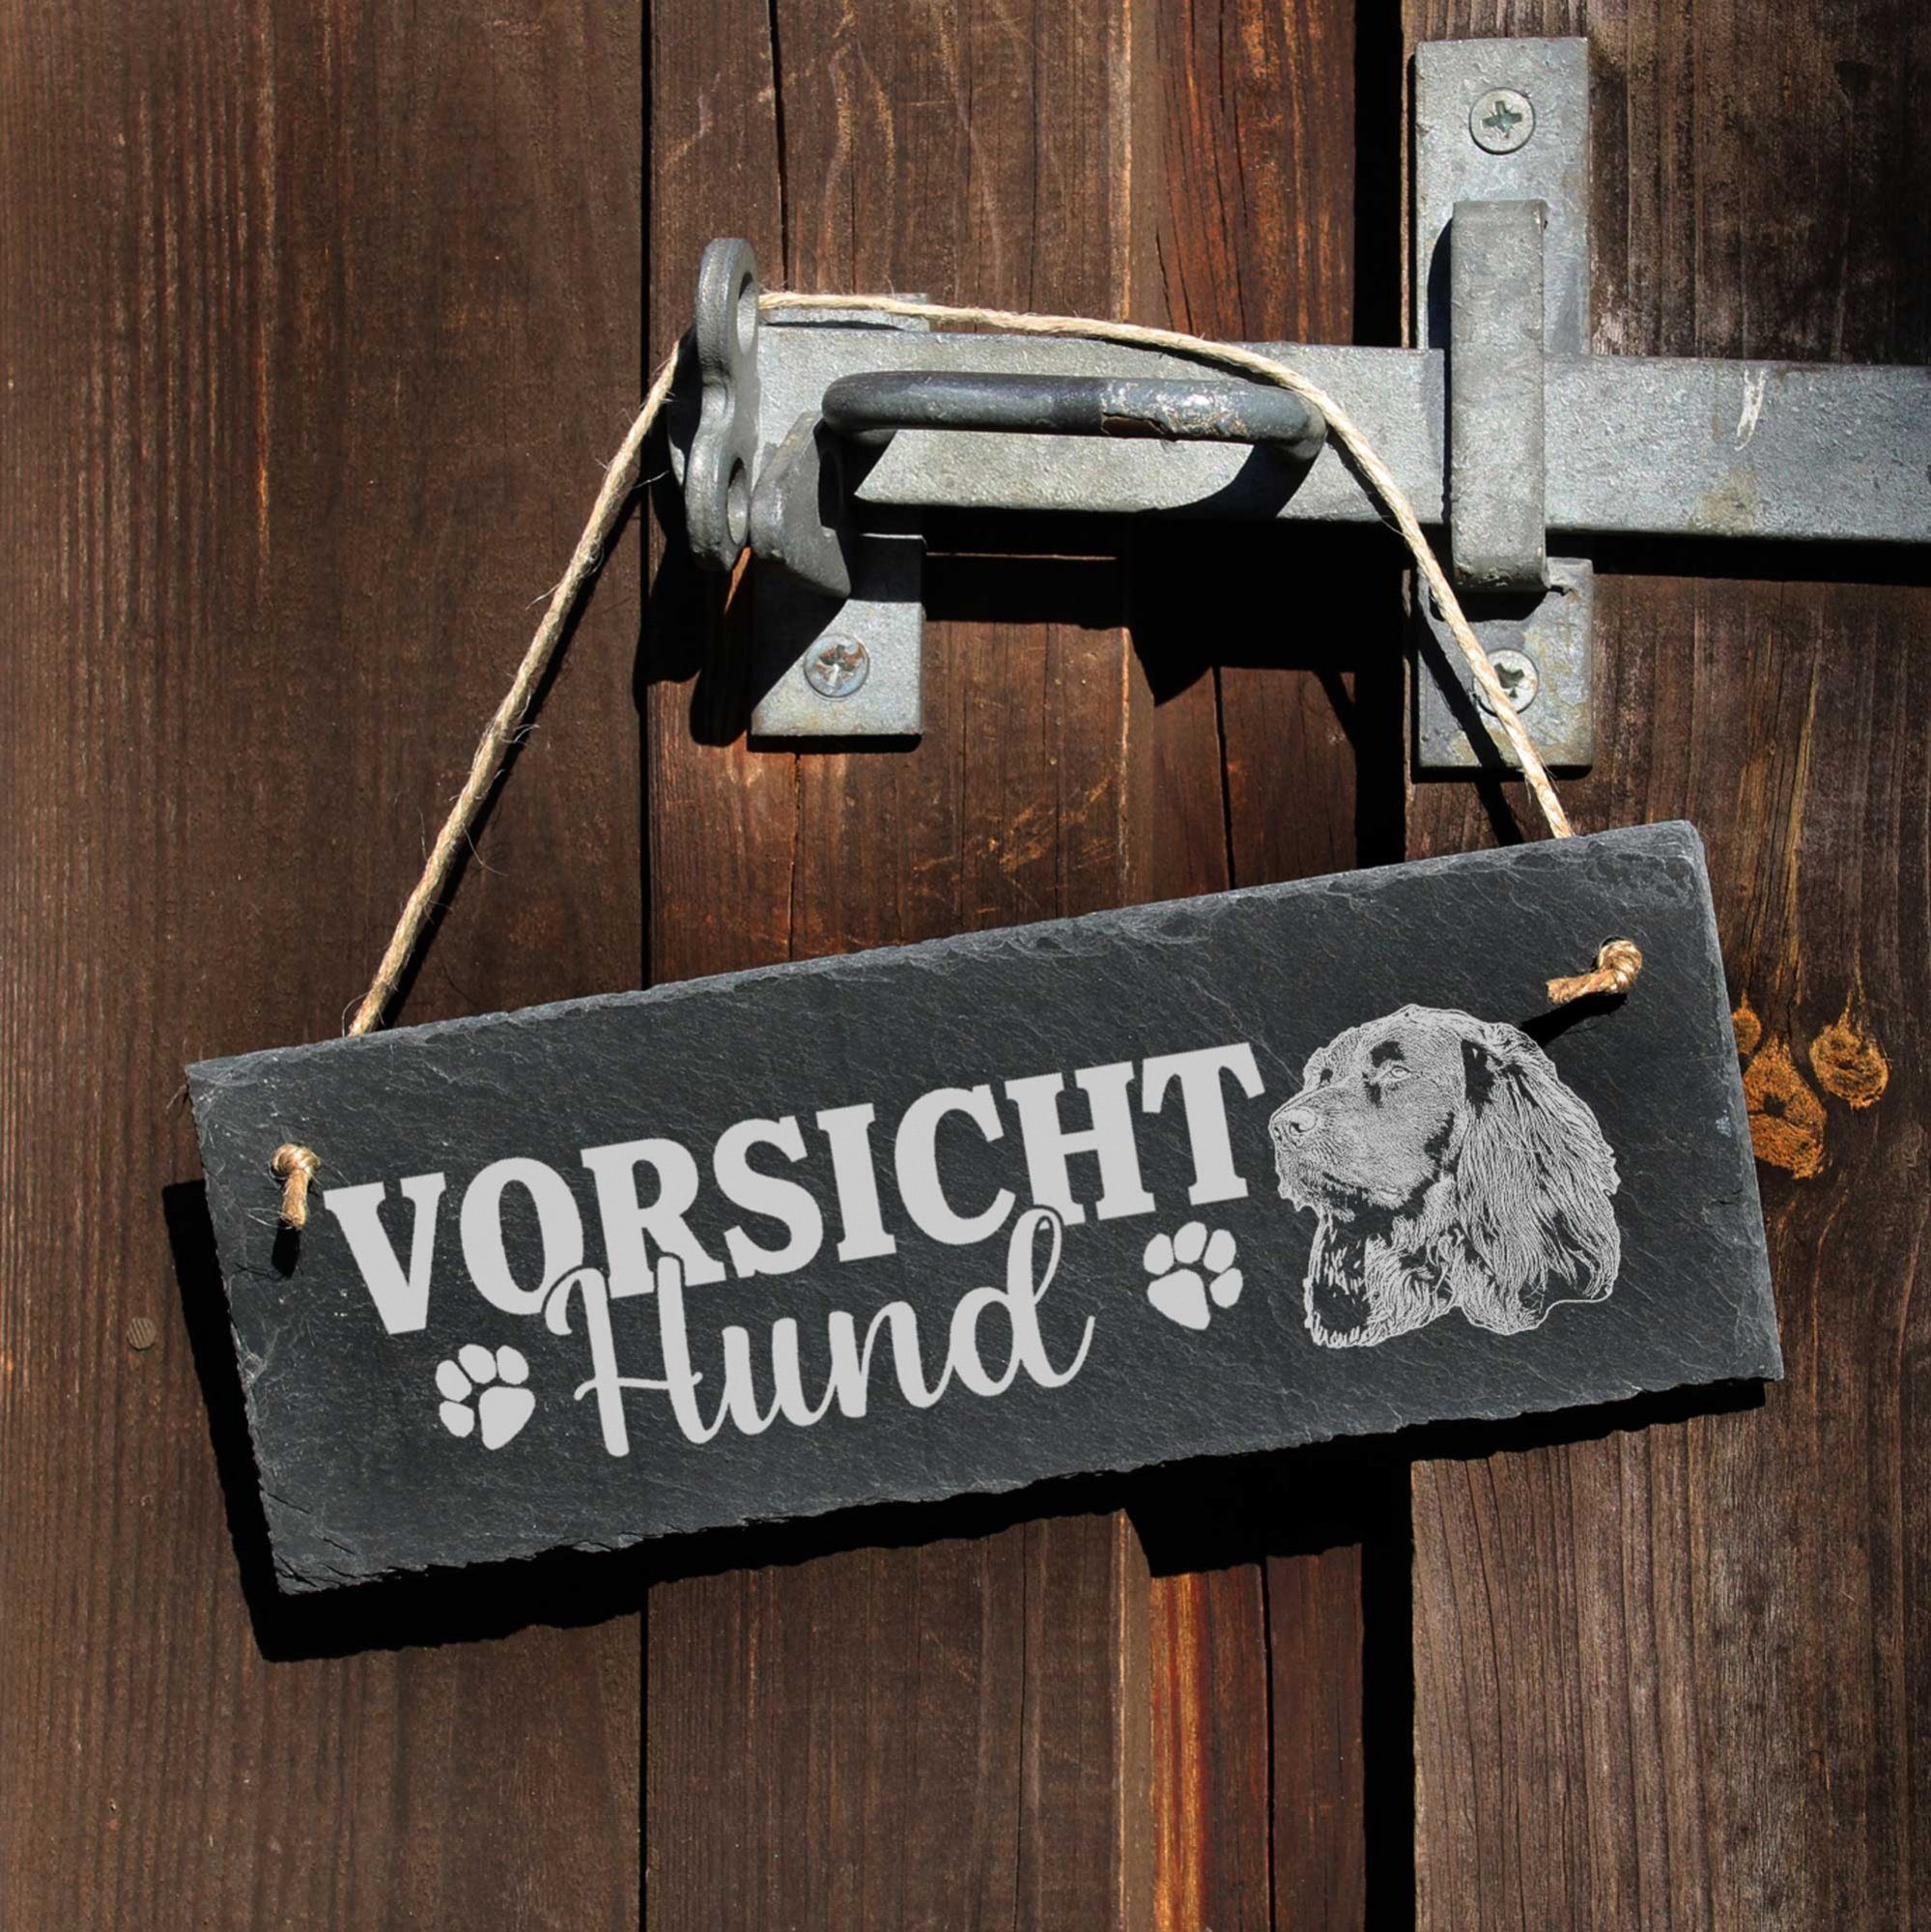 Deutsch Schild Dekolando Hund Langhaar Hängedekoration 22x8cm Vorsicht